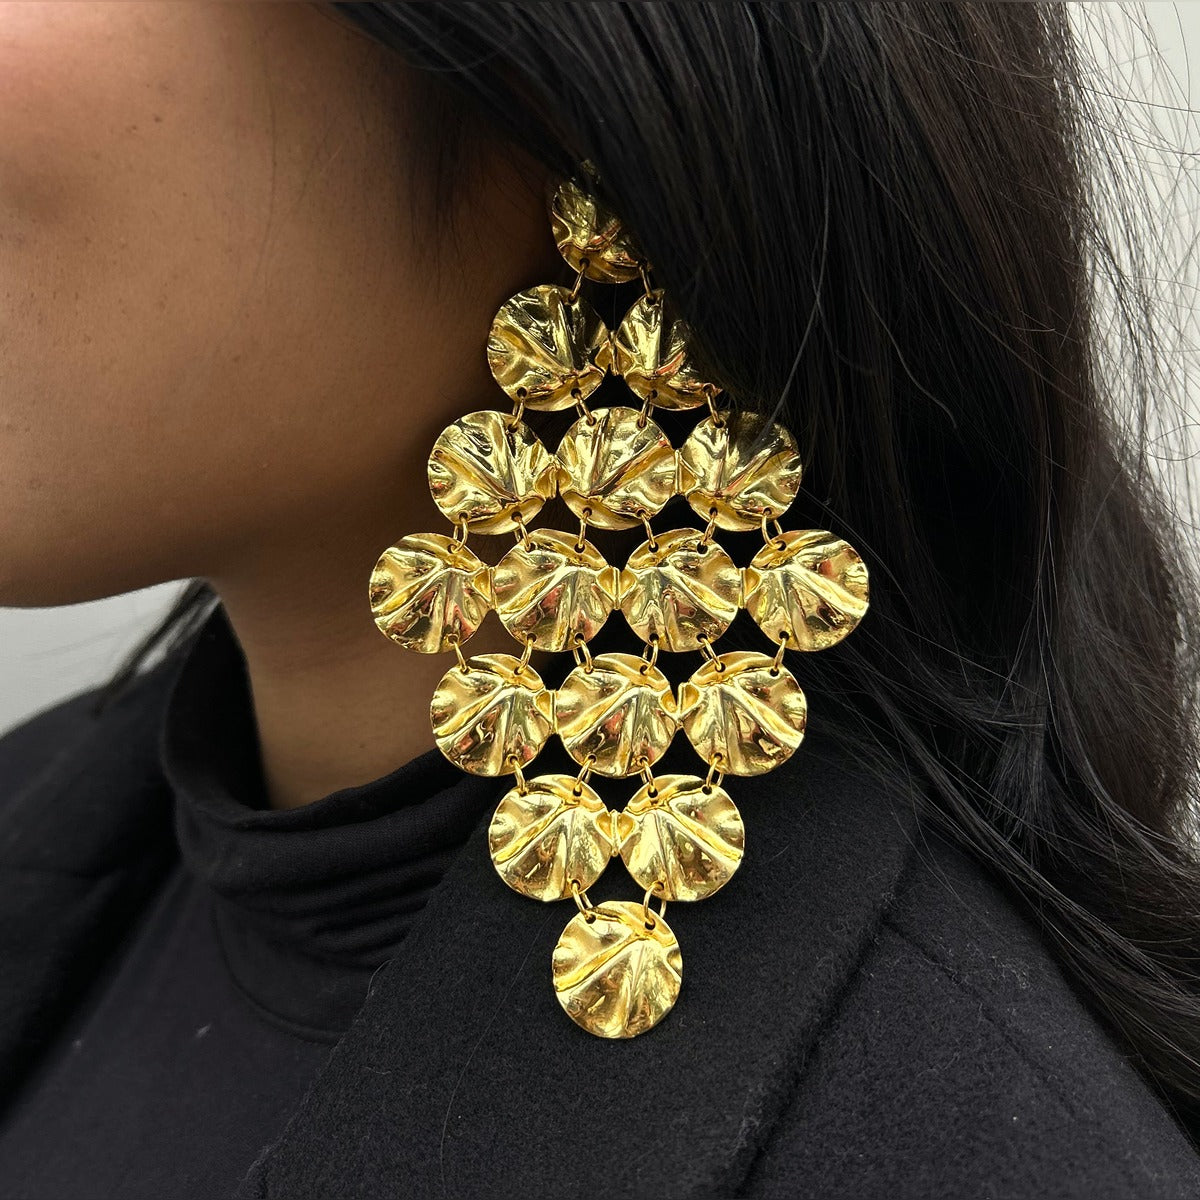 Uncut Diamond Earrings in 22K Gold -Indian Gold Jewelry -Buy Online